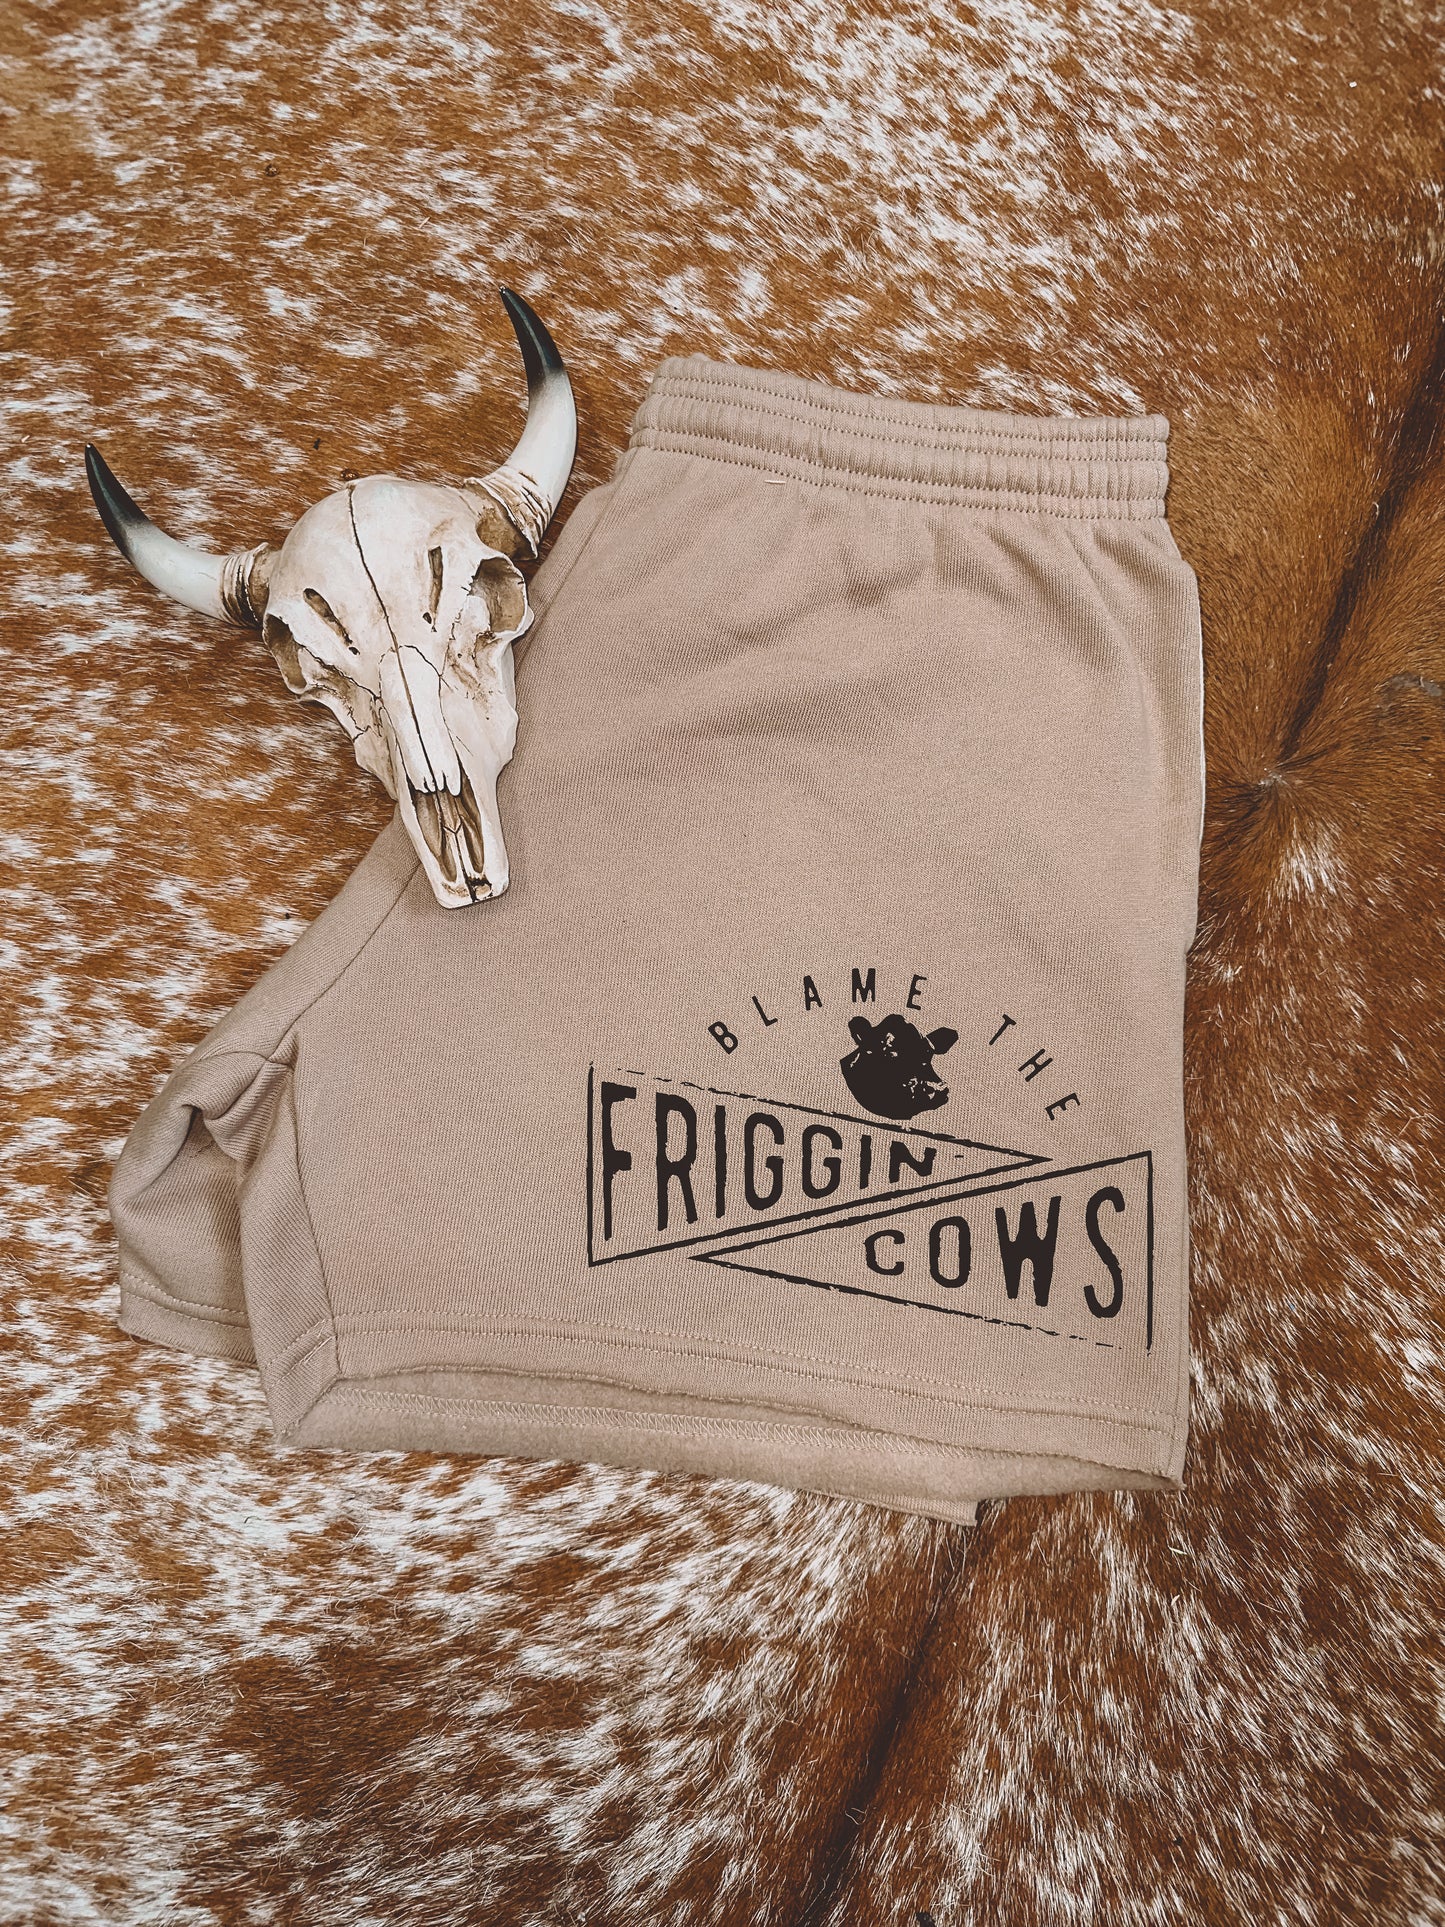 FRIGGIN COWS SHORTS